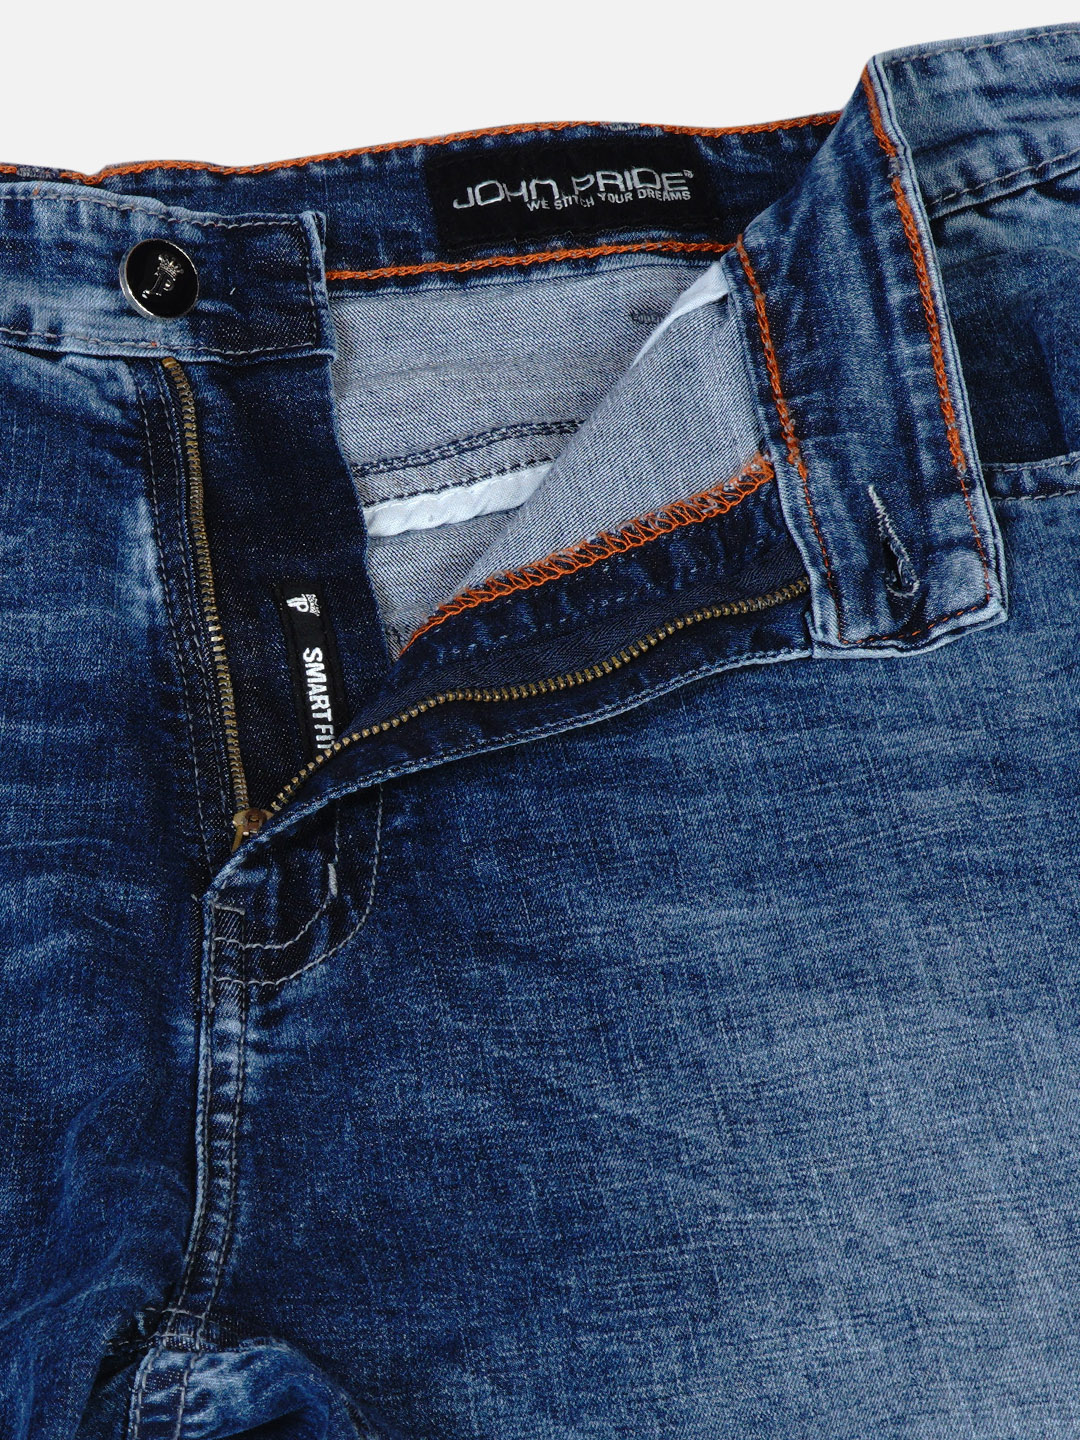 bottomwear/jeans/JPJ6034/jpj6034-2.jpg